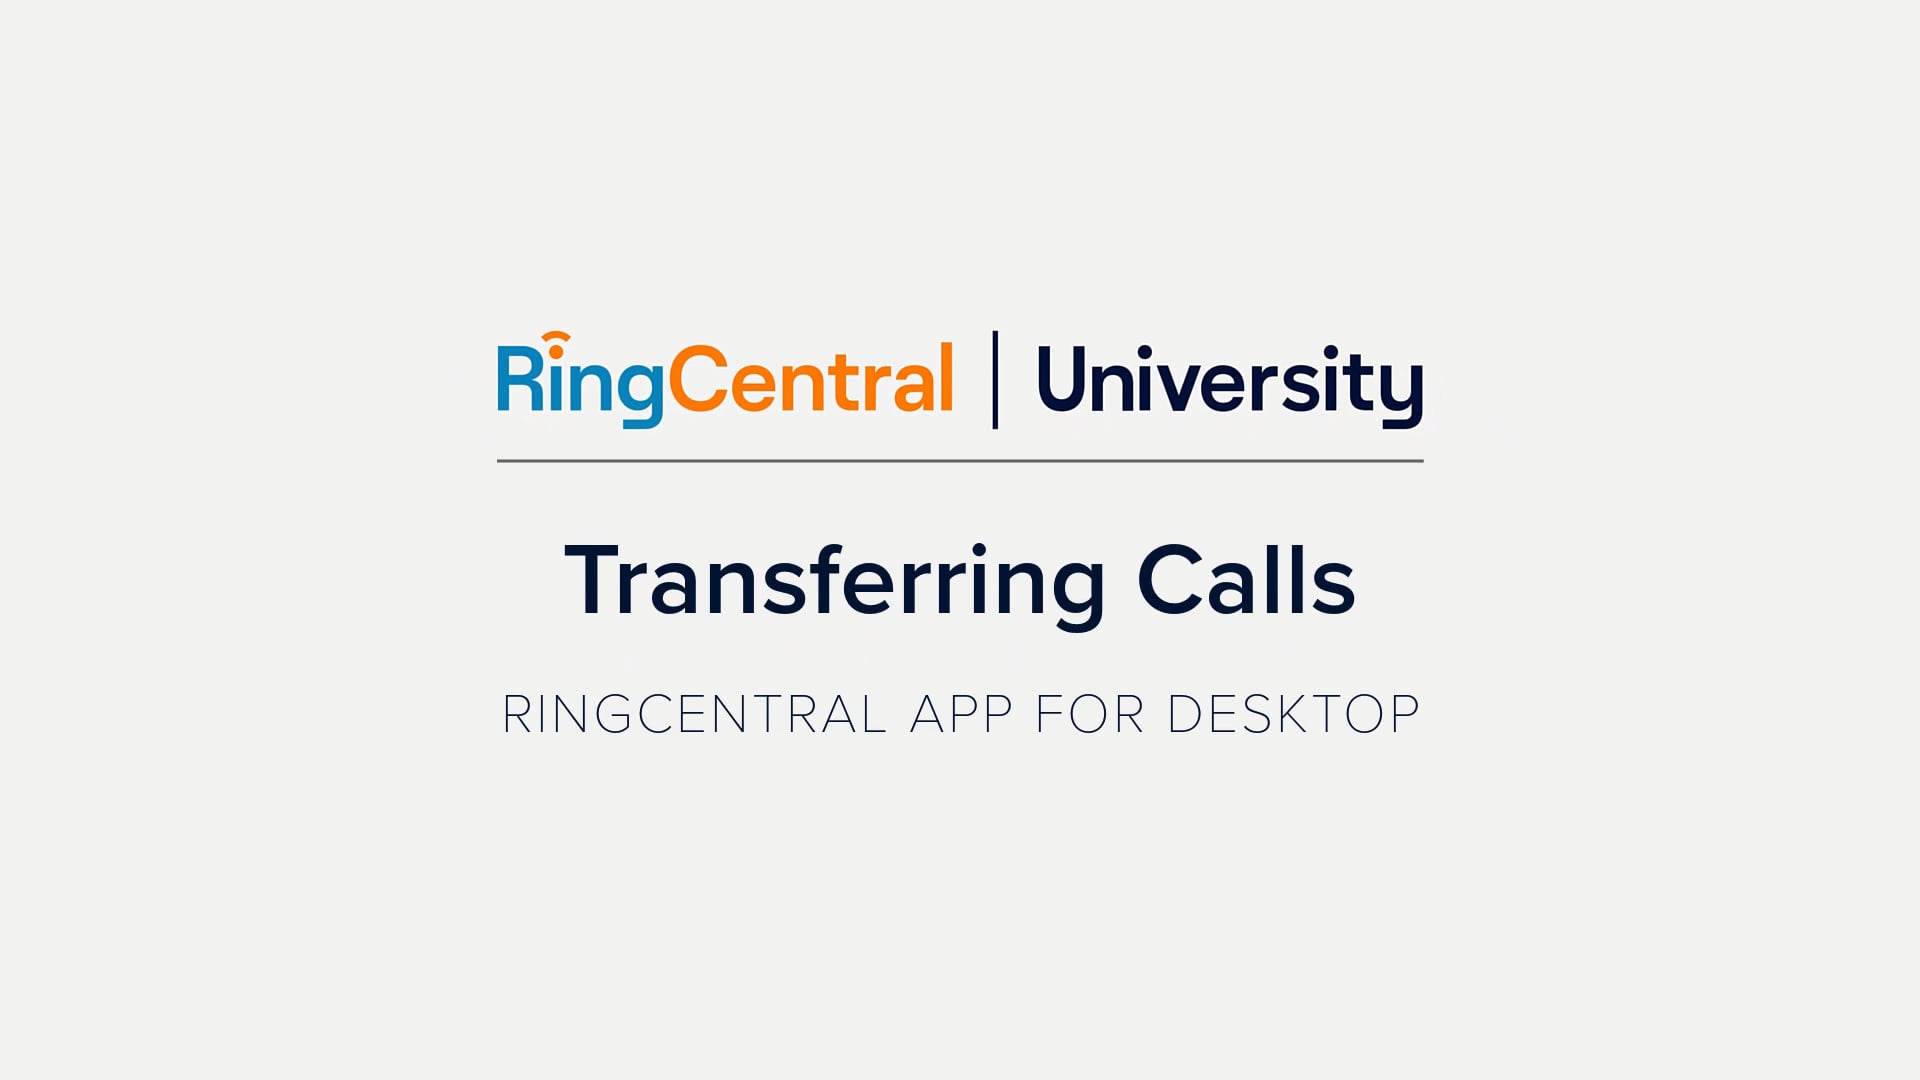 RingCentral App for Desktop: Transferring Calls